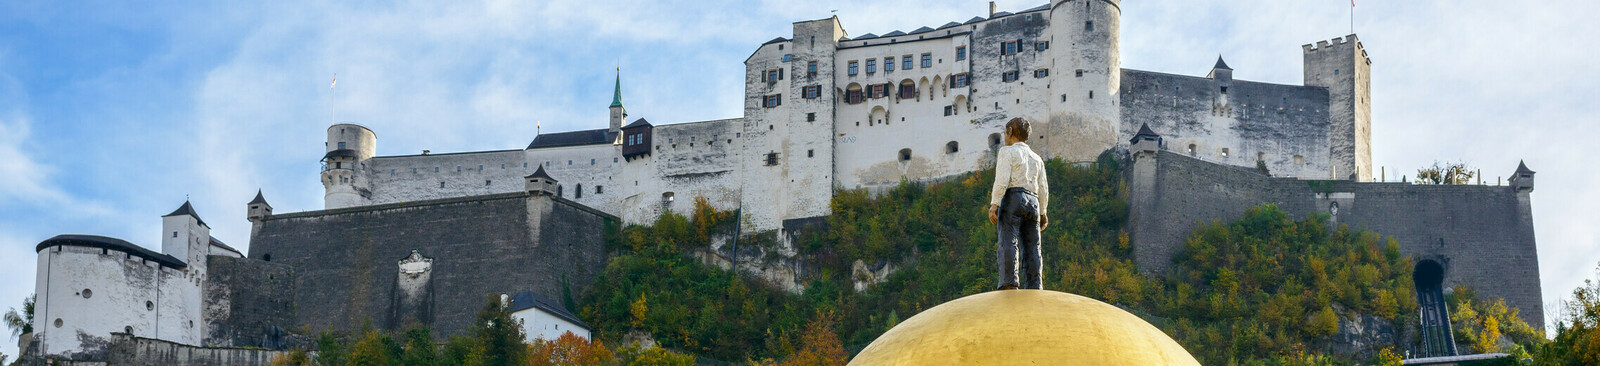 Kapitelplatz in Salzburg mit Goldener Kugel von Stephan Balkenhol